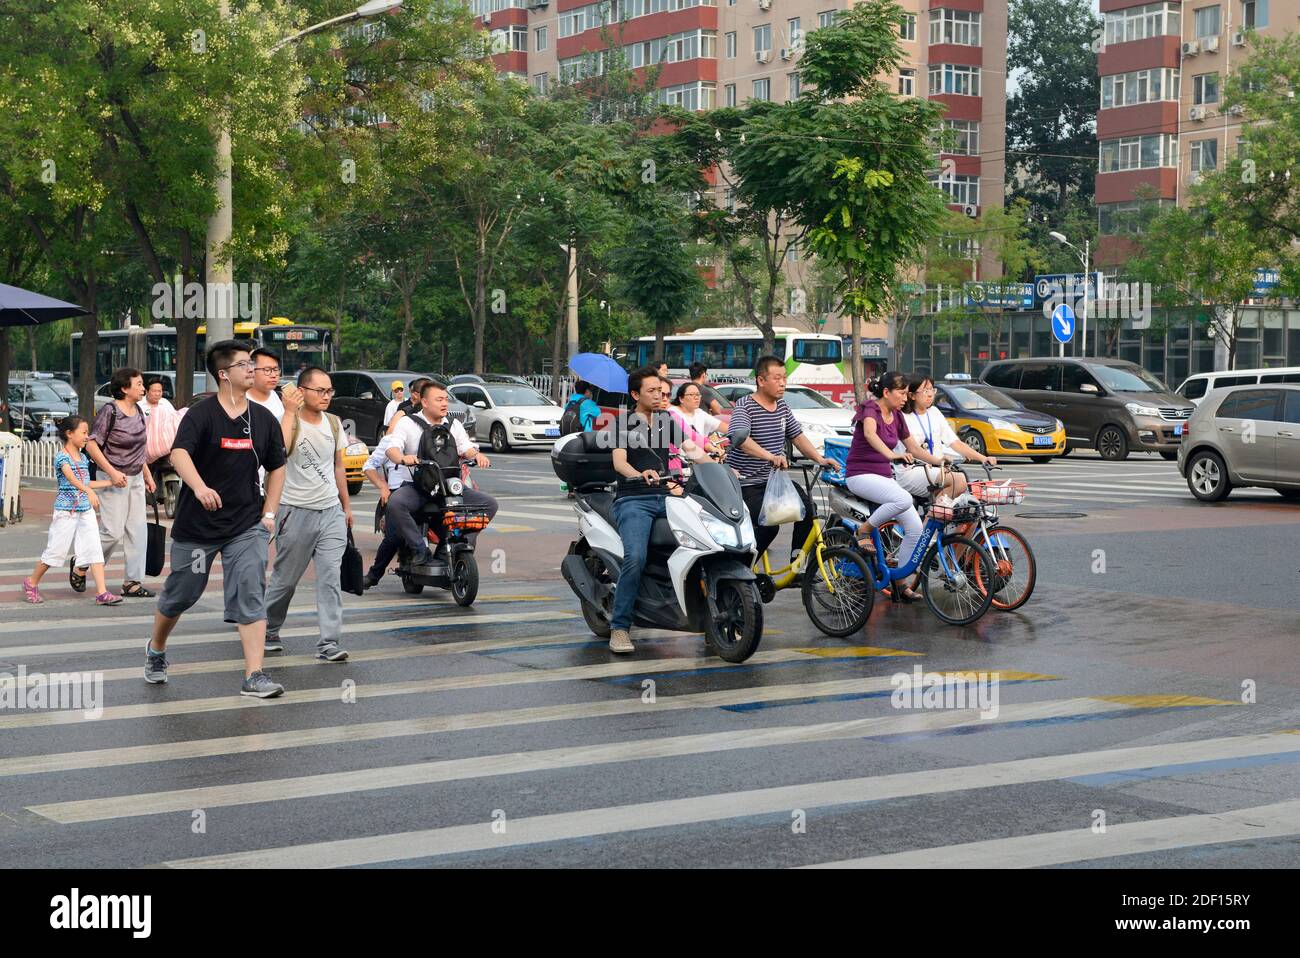 Les gens traversent une rue une fois que les lumières changent de vert après une douche de pluie dans le quartier de Chaoyang, Beijing, Chine Banque D'Images